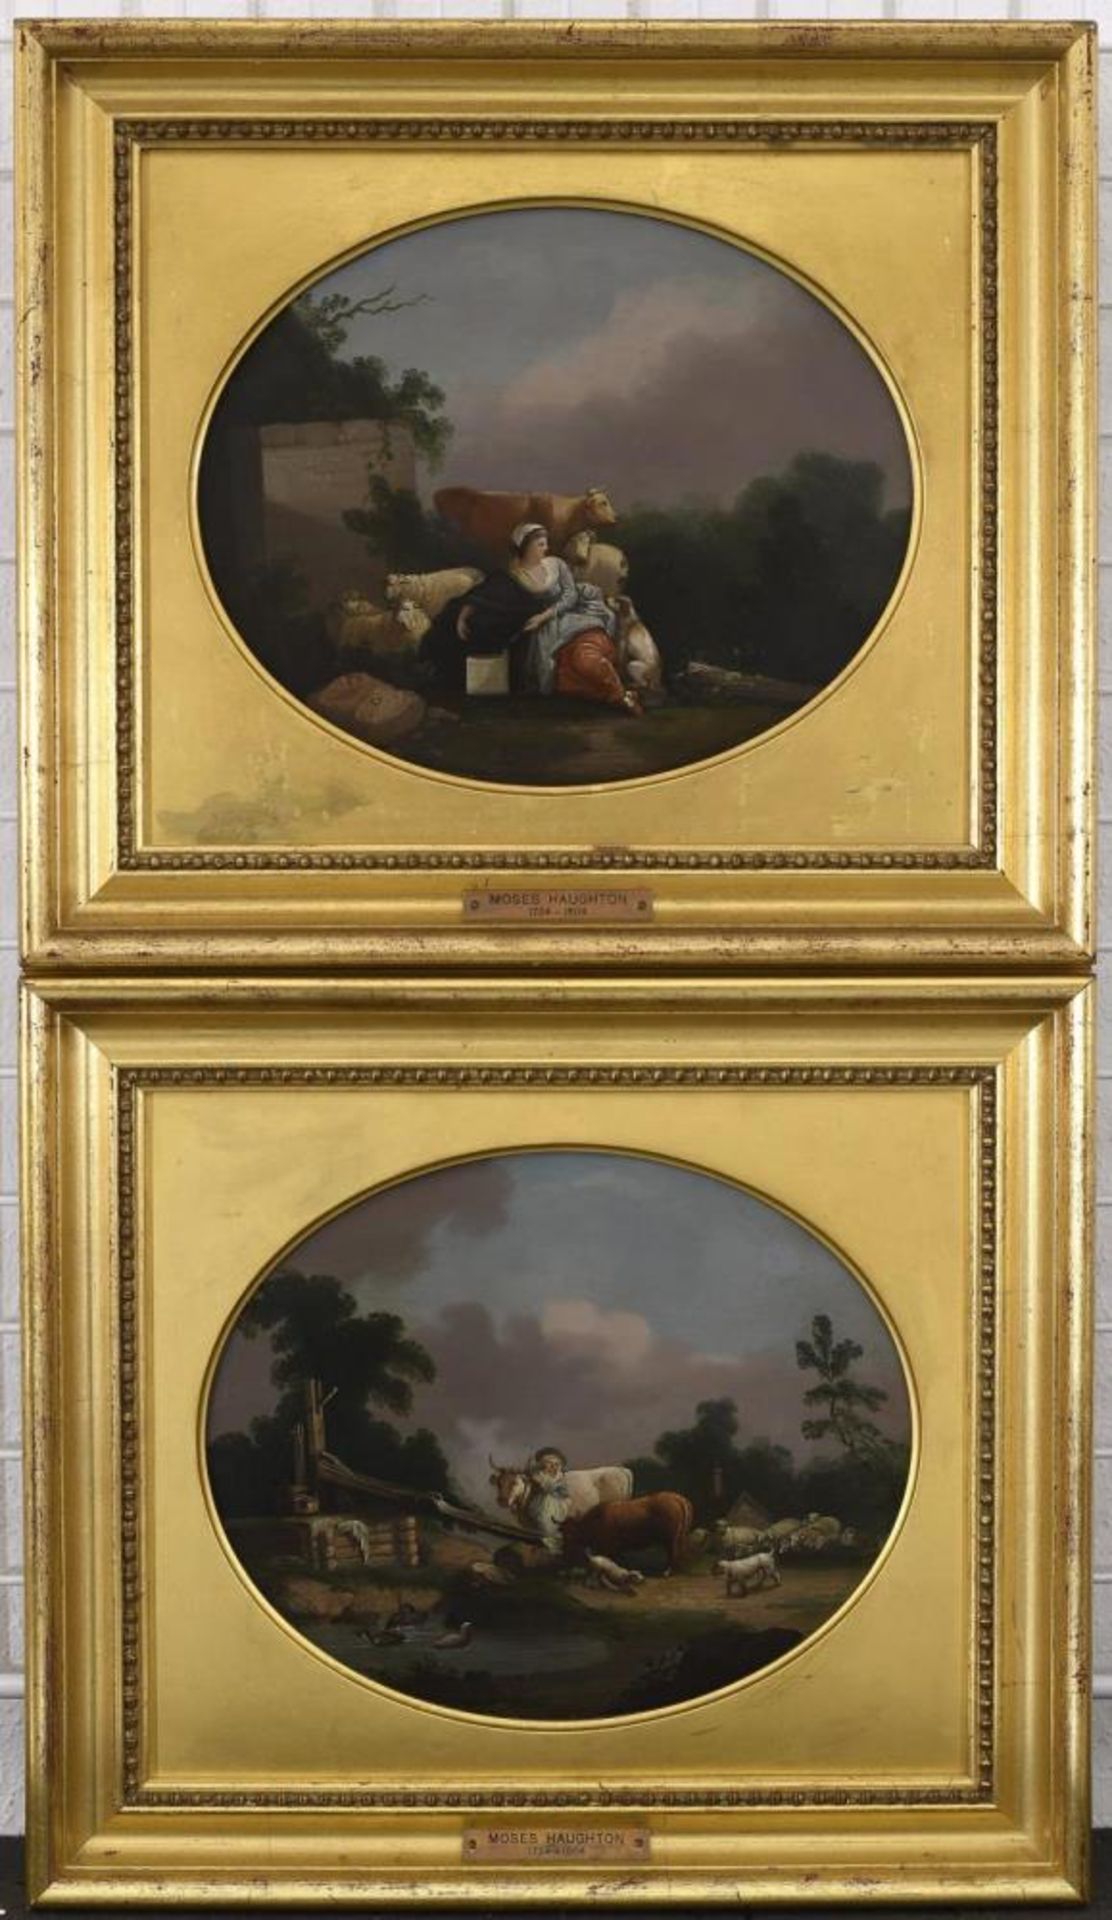 ENGLAND (WOHL). Ein Paar Pastoralen. Zwei Gemälde: Öl auf Eisenblech. - Image 2 of 3